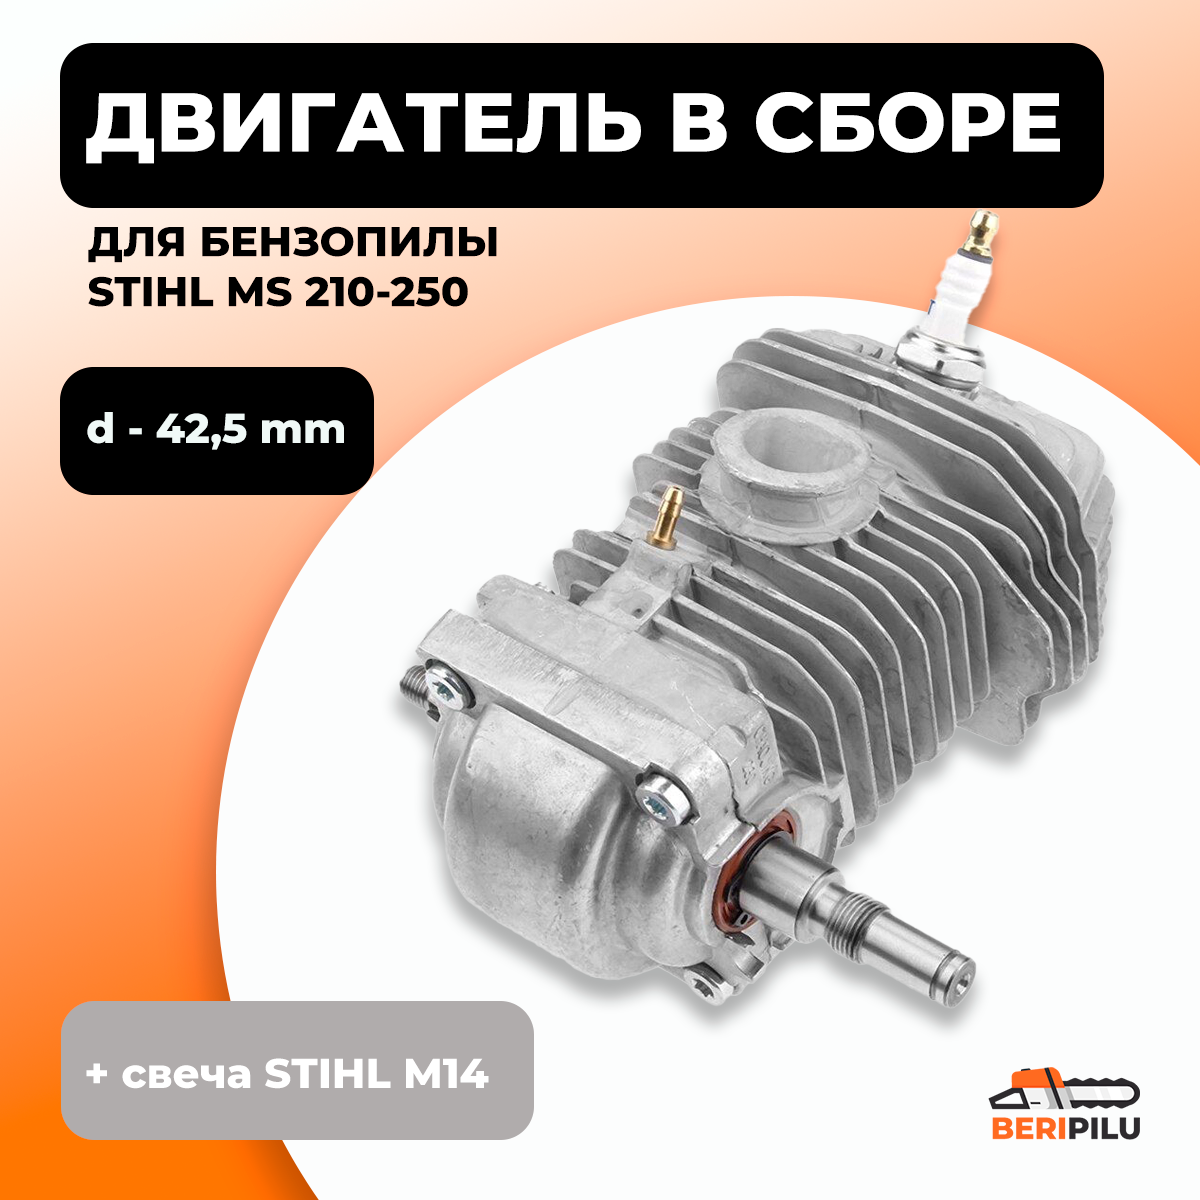 Двигатель в сборе для бензопилы STIHL MS 210, MS 230, MS 250 d-42,5mm